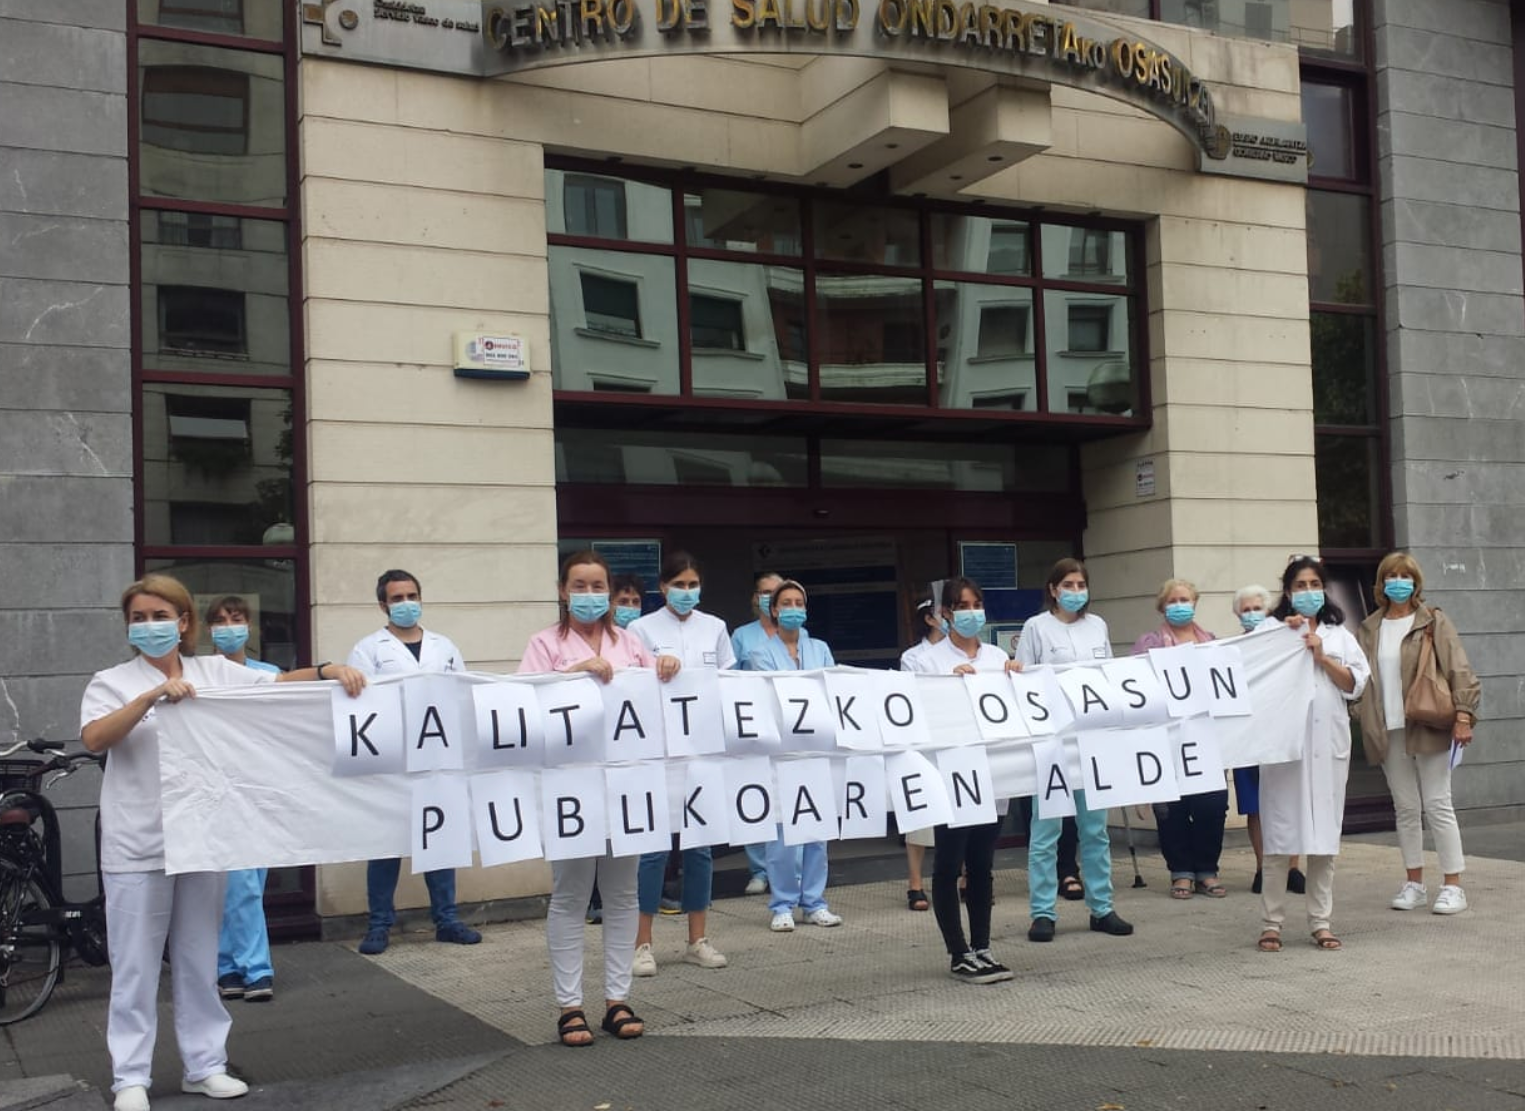 Concentración frente a los hospitales en defensa de la sanidad pública